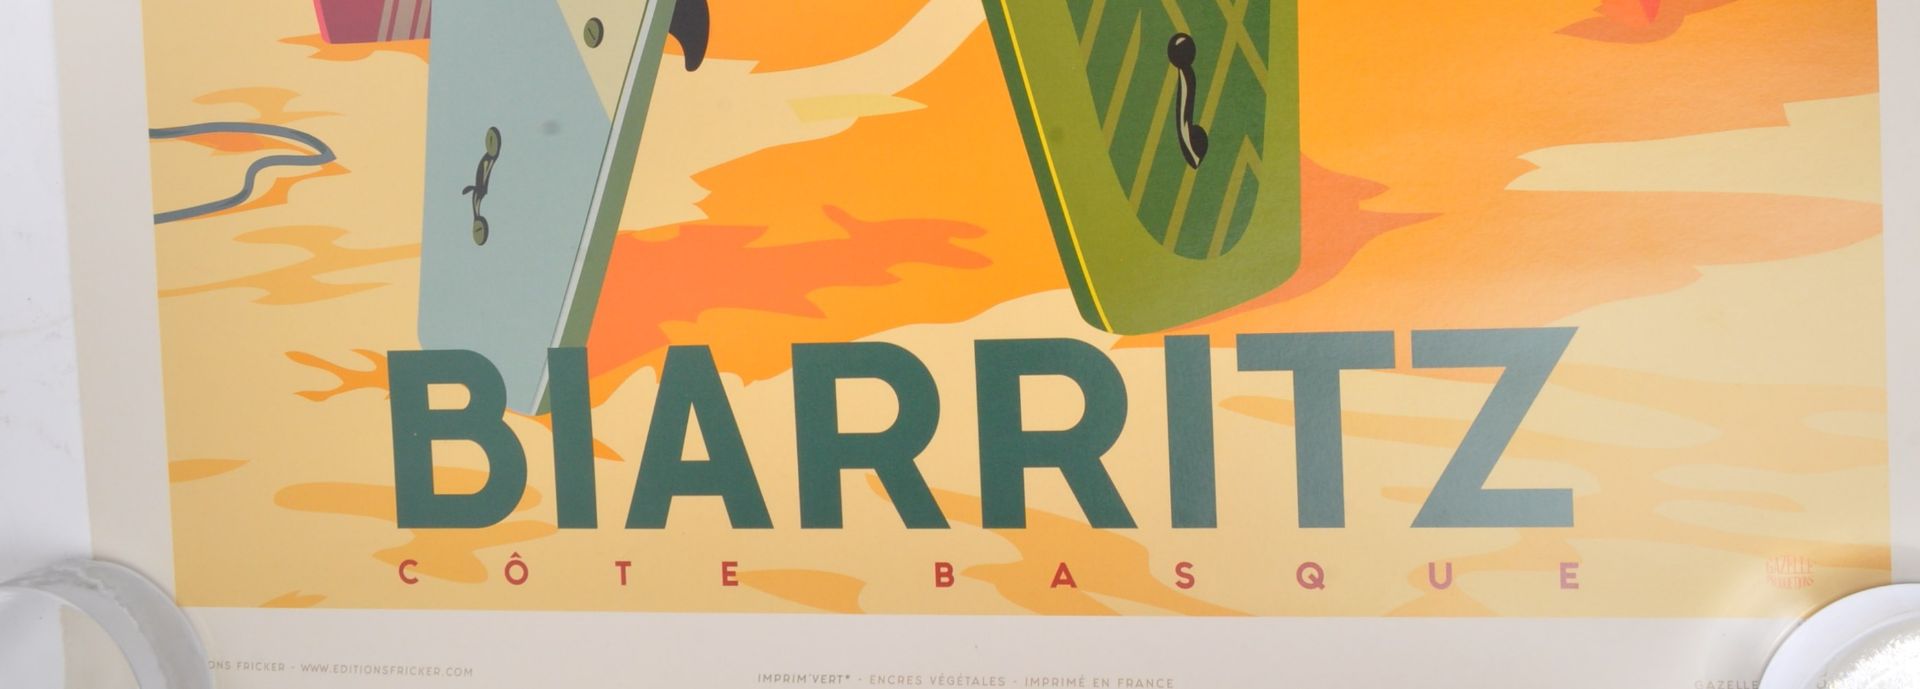 BIARRITZ COTE BASQUE SURFBOARDS AT REST POST WAR ART PRINT - Bild 2 aus 6